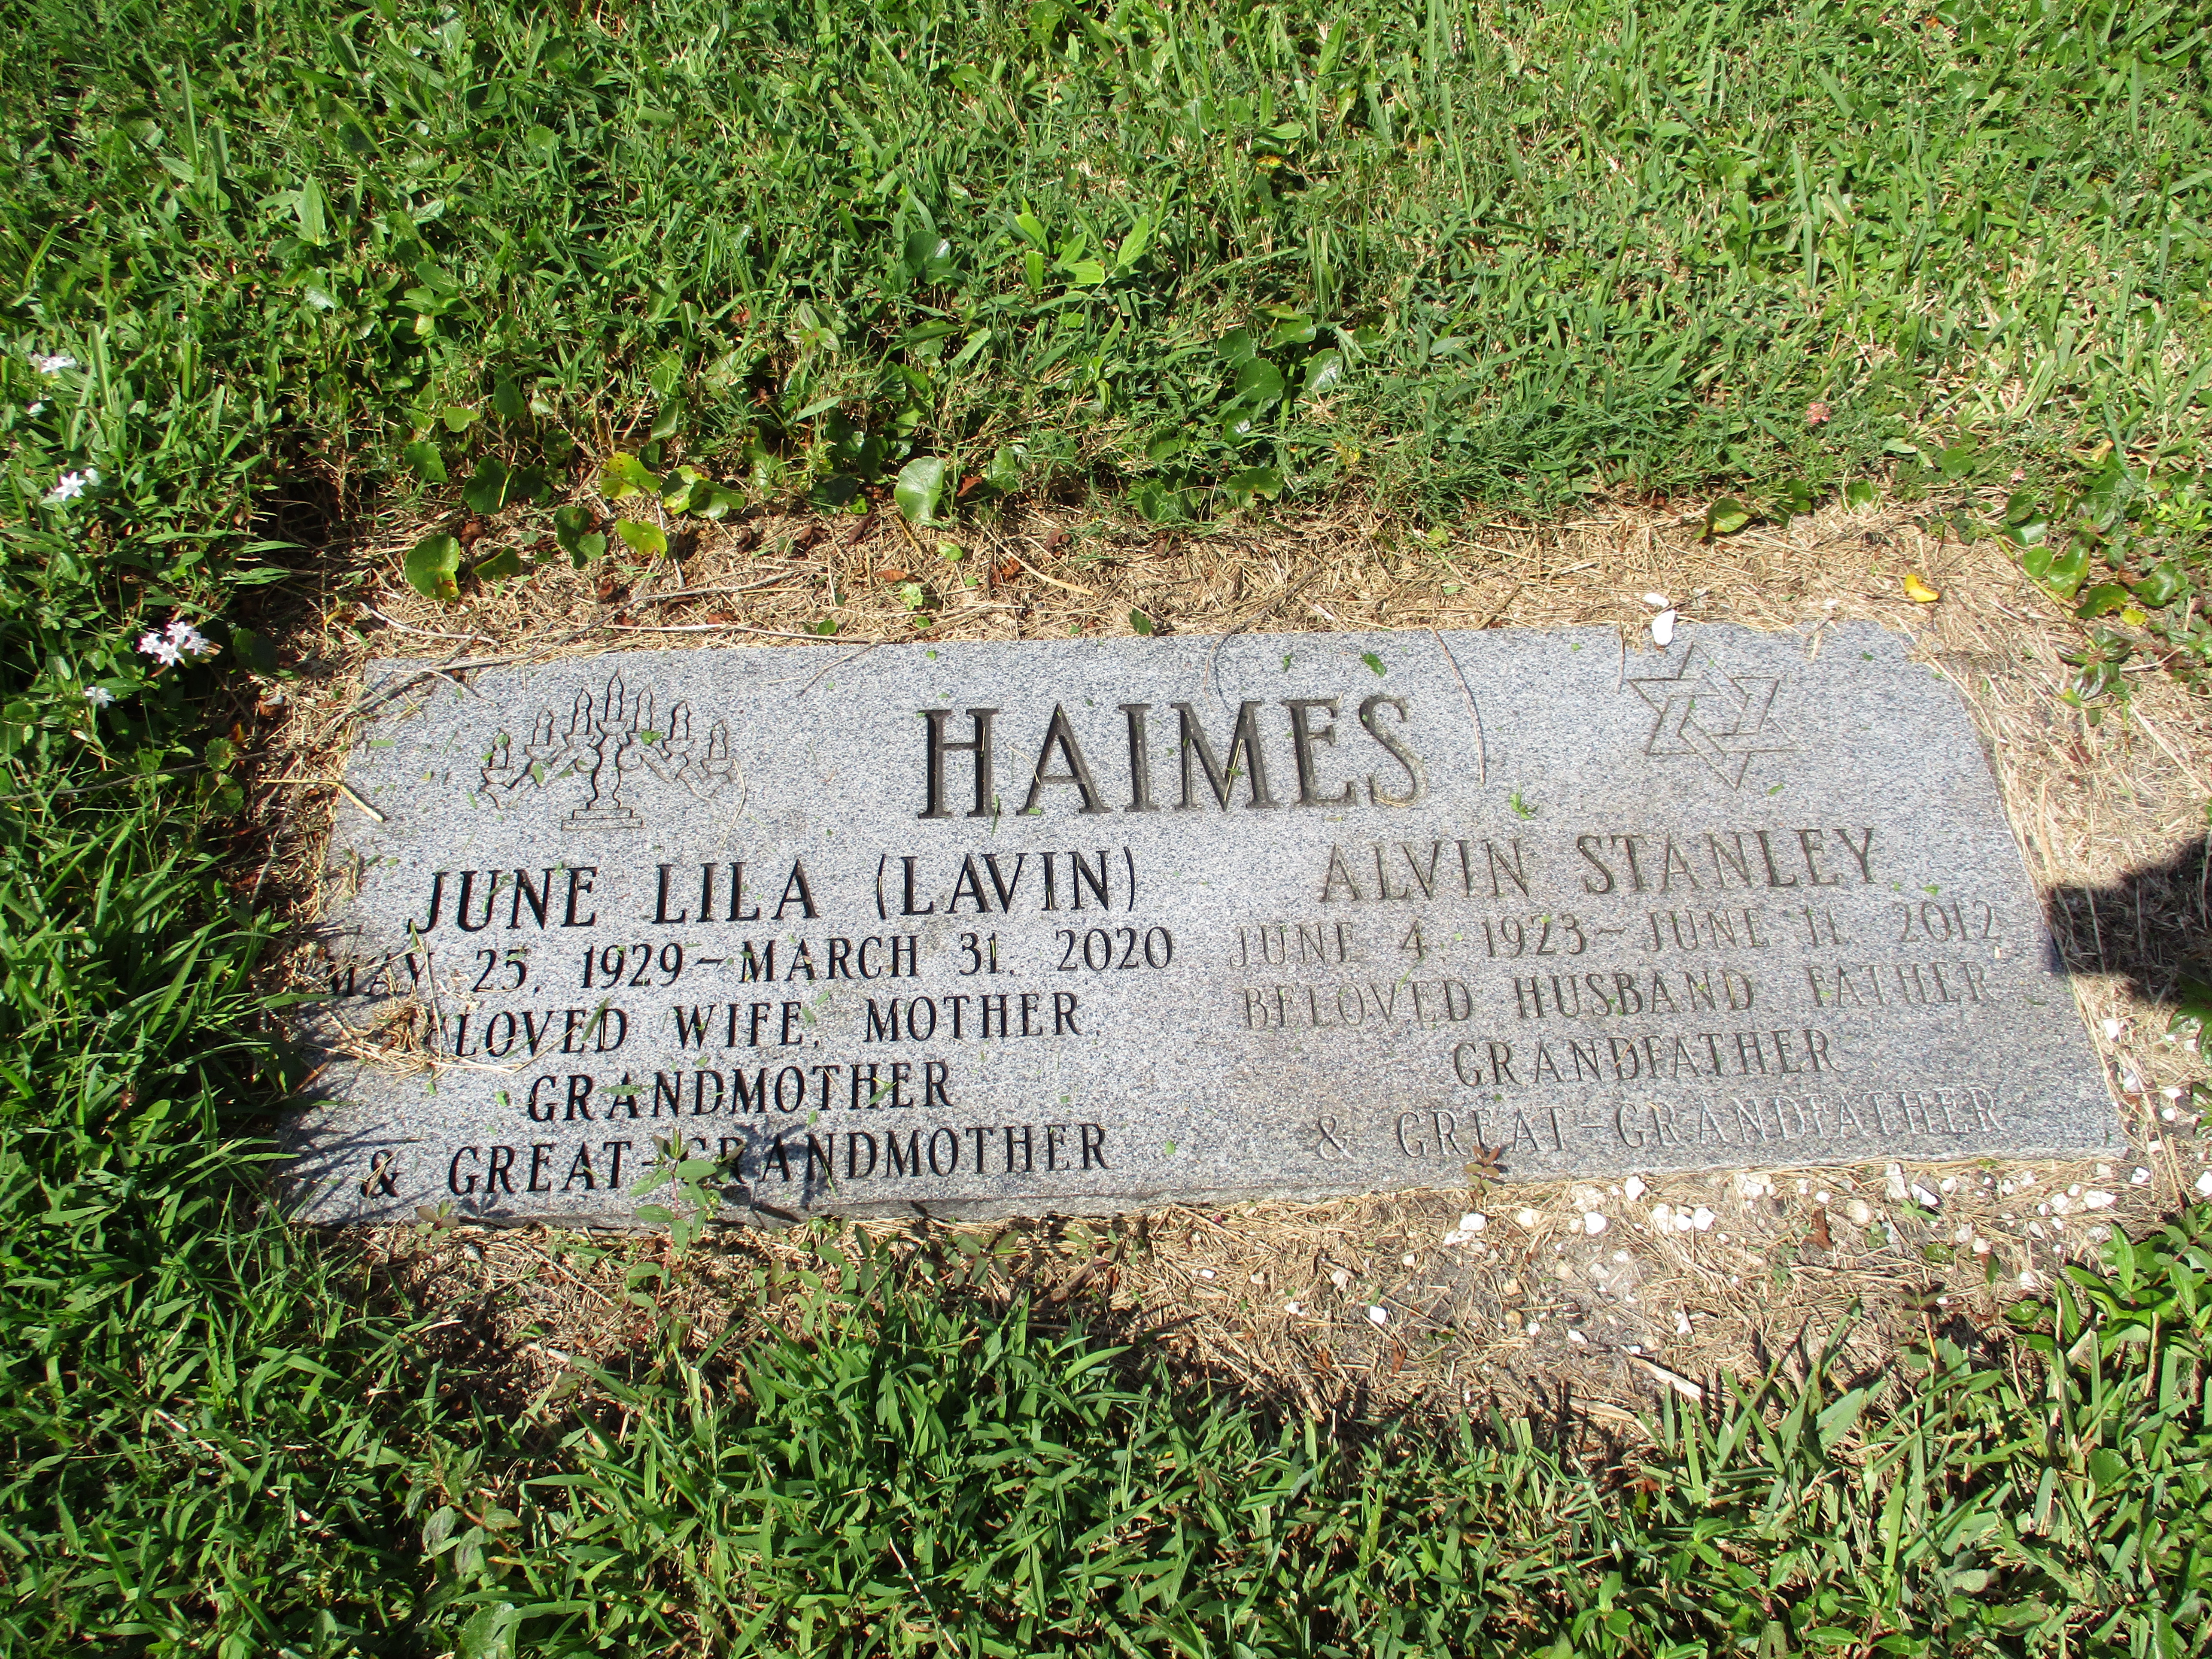 June Lila "Lavin" Haimes